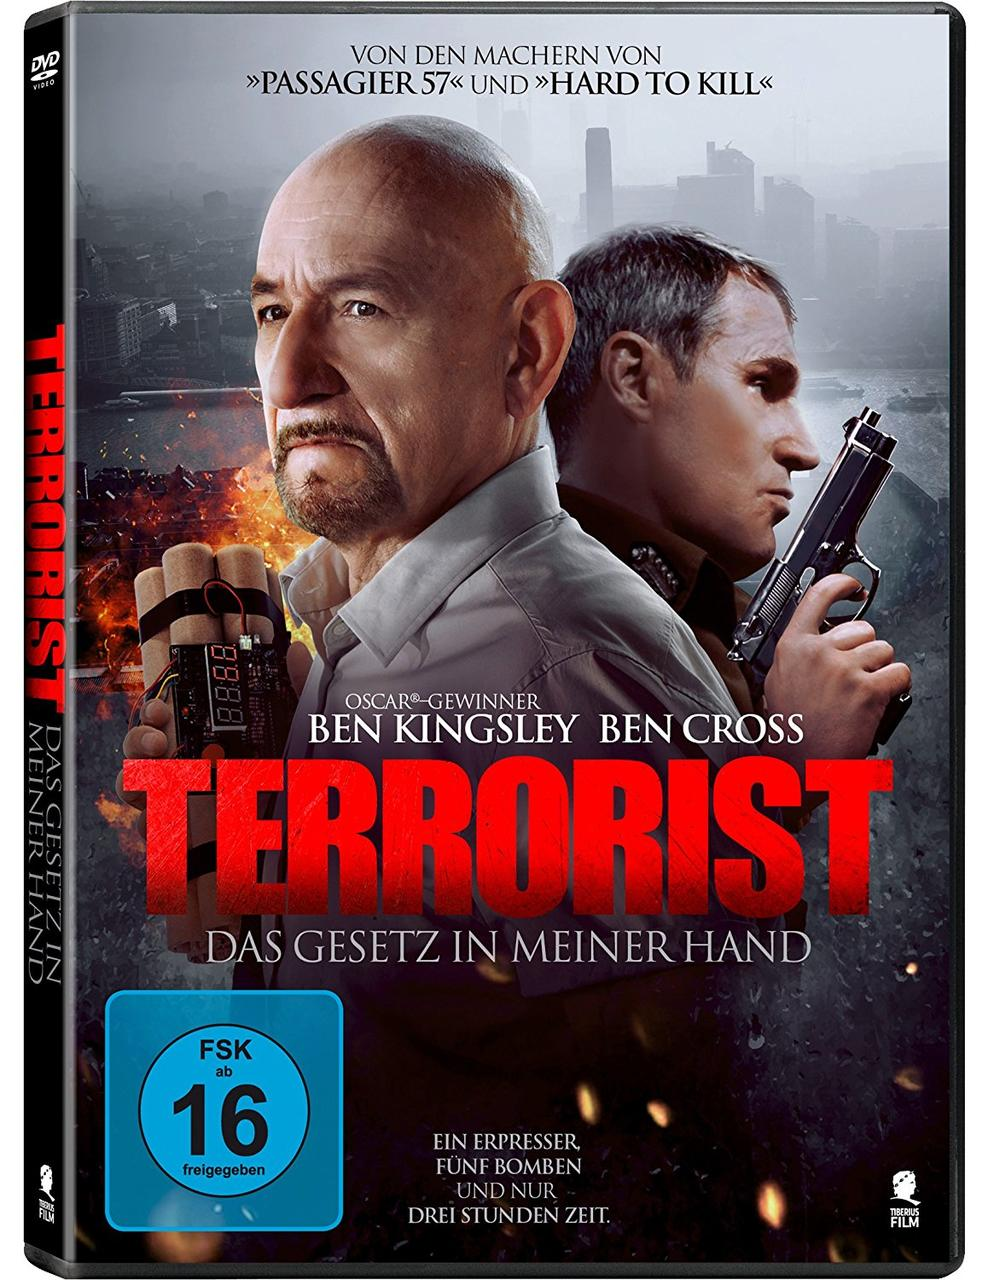 GESETZ HAND DAS DVD IN TERRORIST - MEINER